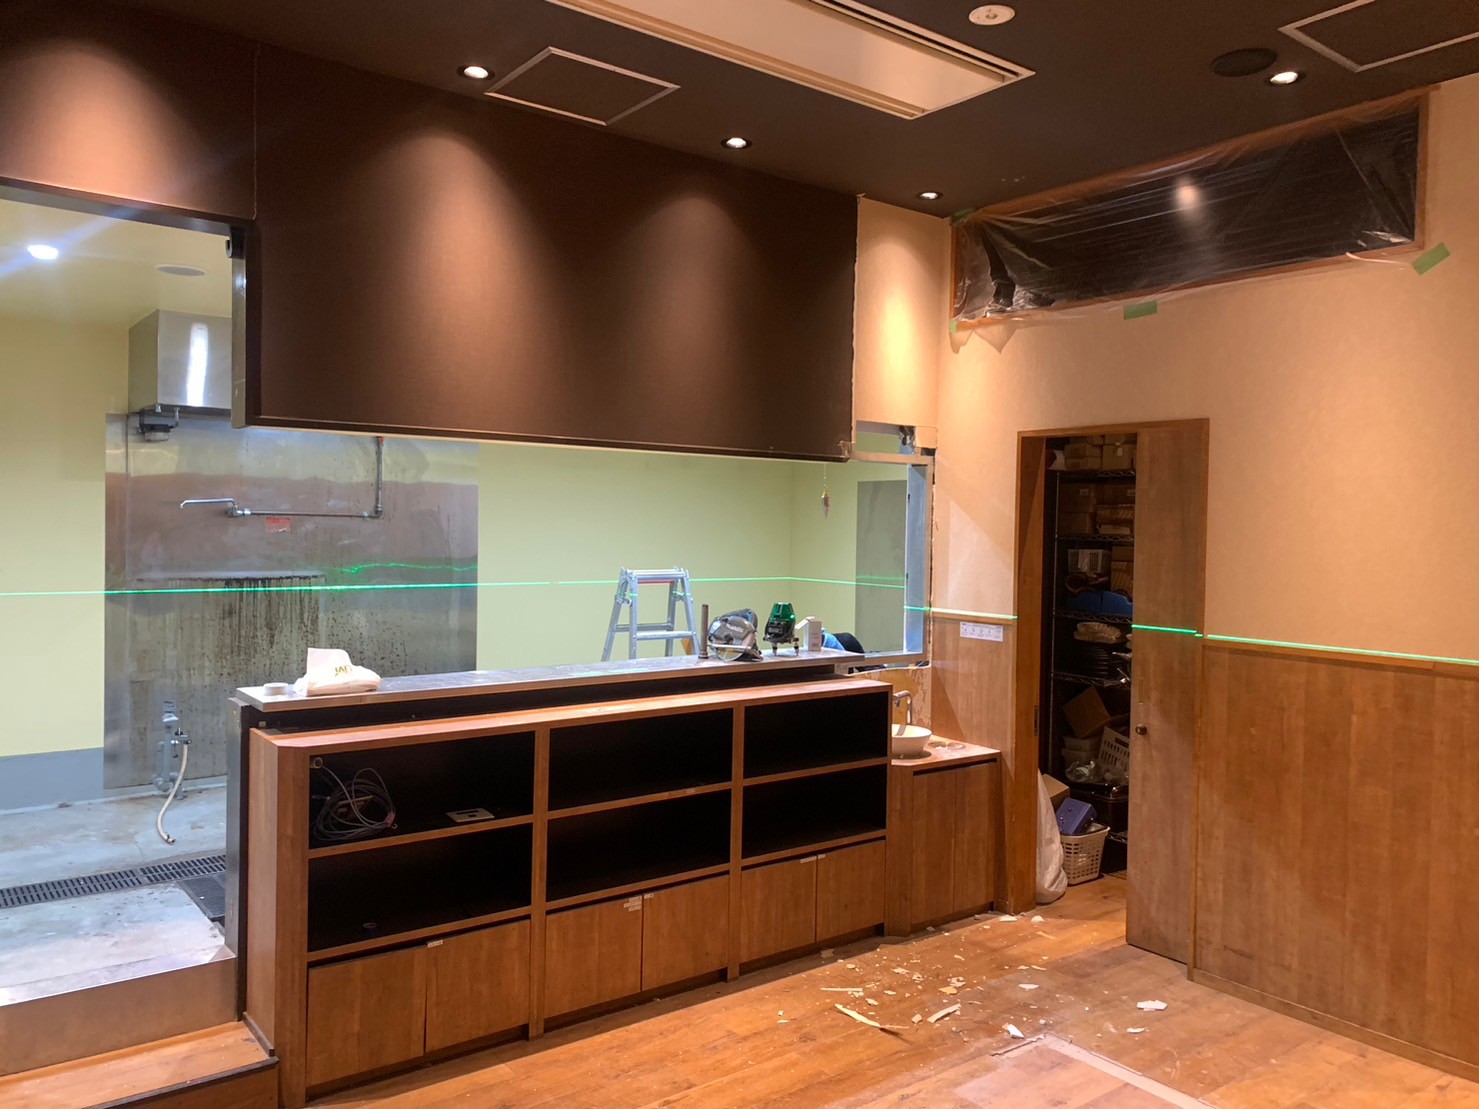 飲食店（居酒屋）の店舗内装工事を神奈川県川崎市にて行いました